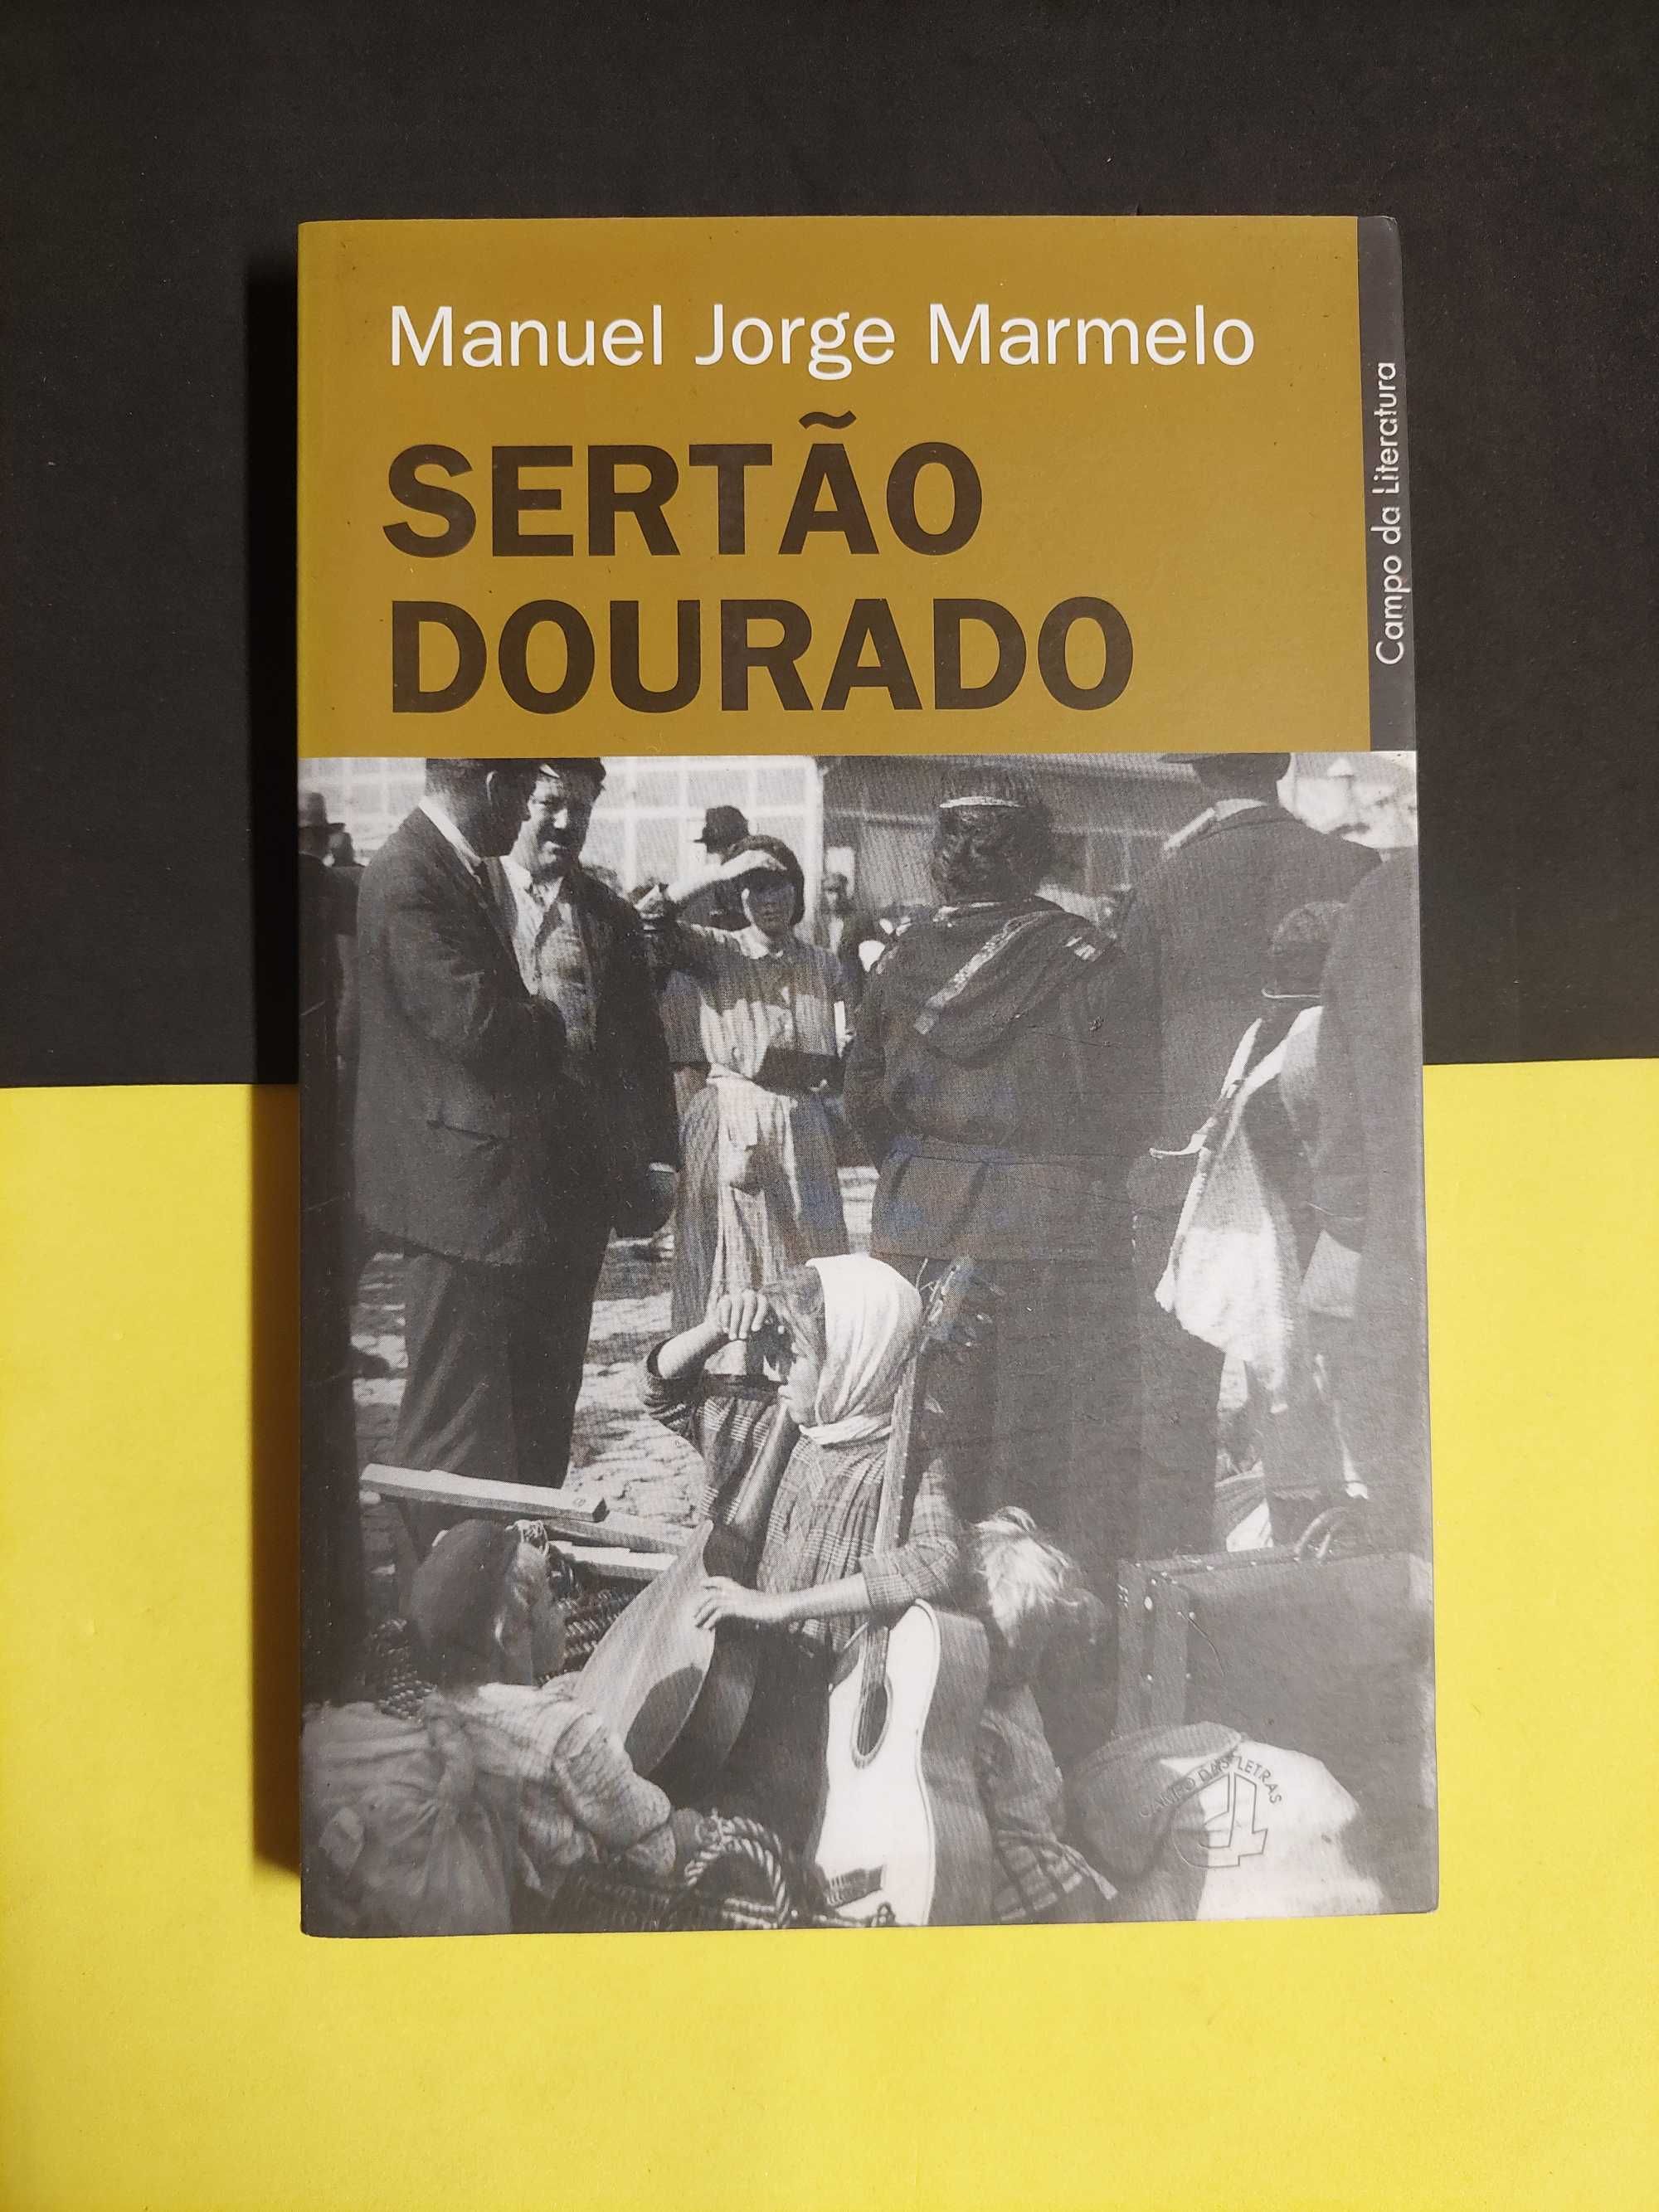 Manuel Jorge Marmelo - Sertão dourado